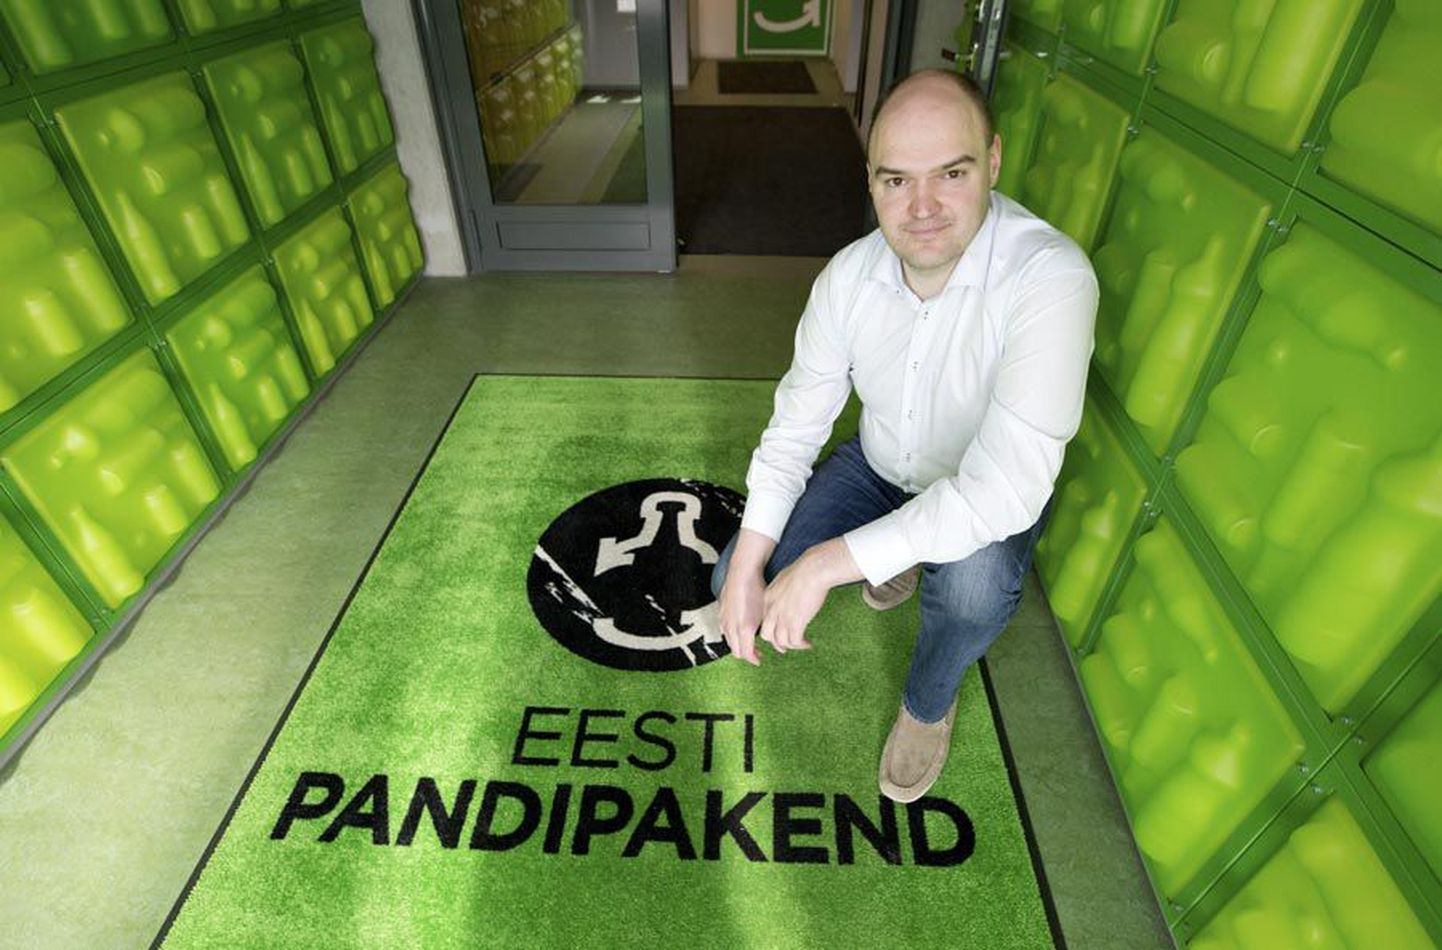 Eesti Pandipakendi tegevjuht Rauno Raal rõhutab, et pandipakendite kogumine peab käima nii läbipaistvalt kui võimalik. Vastasel juhul tekib oht, et süsteem kukub enda tekitatud vigade tõttu kokku.